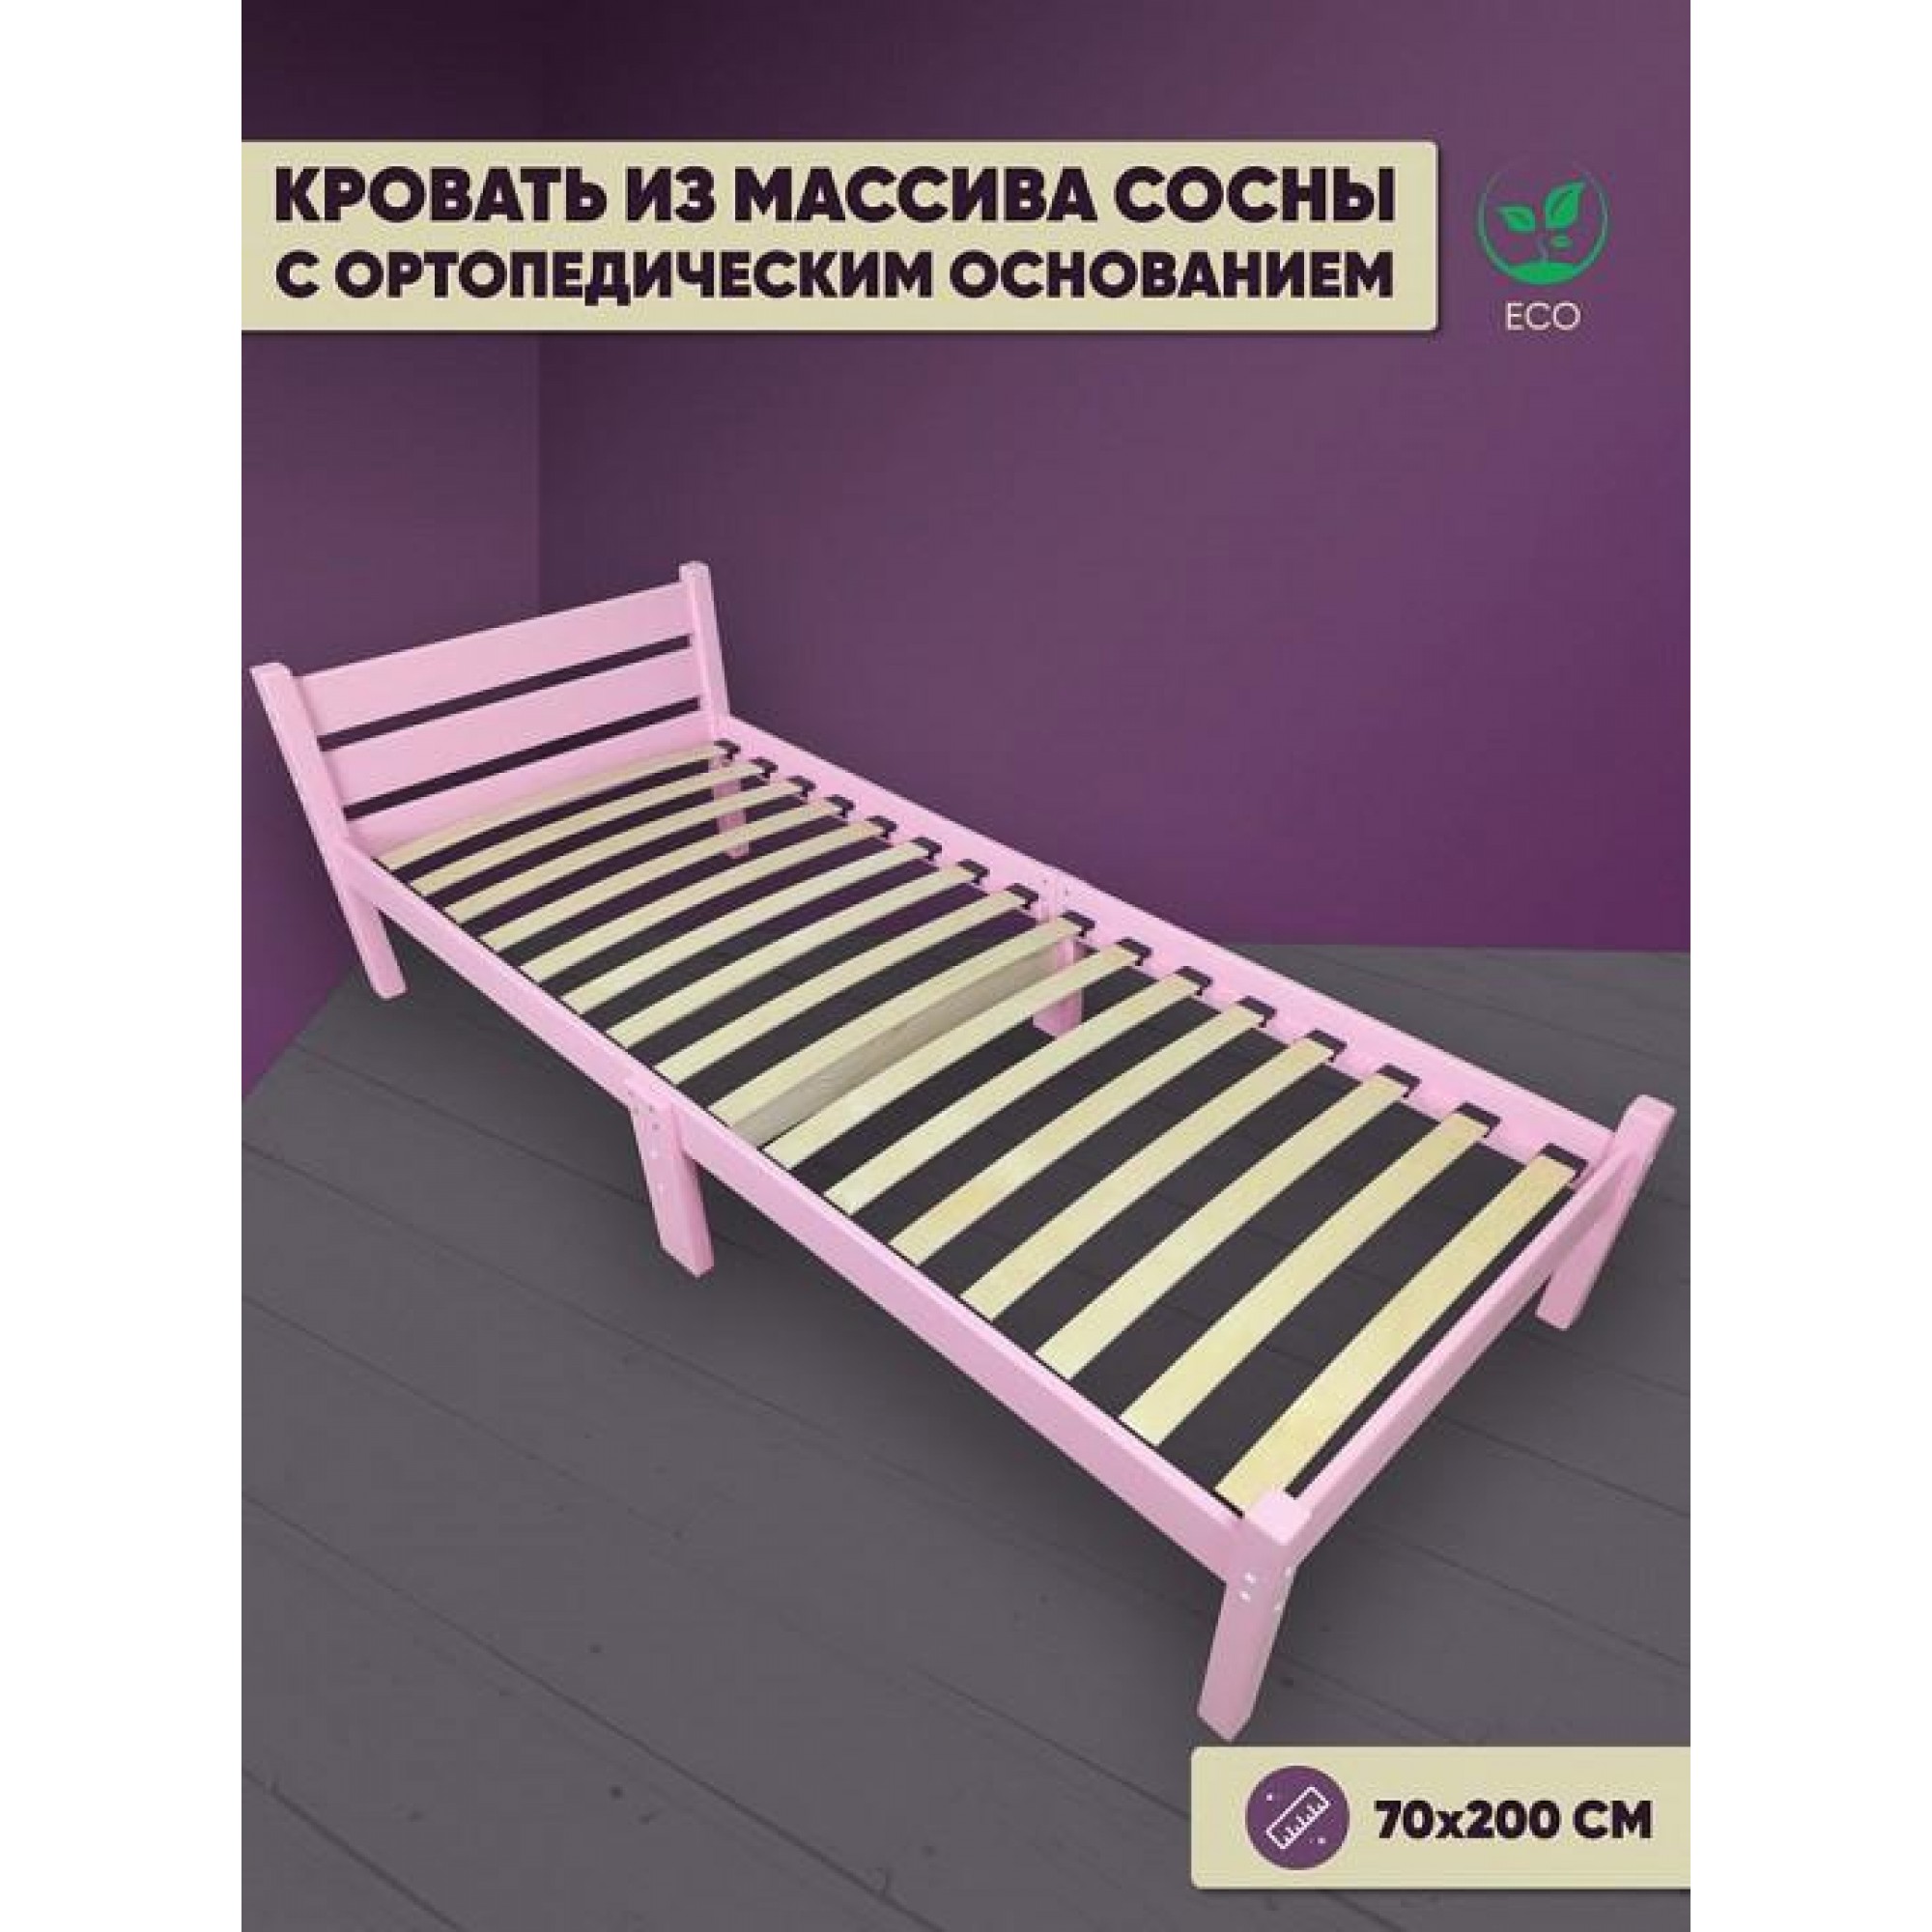 Кровать односпальная Компакт Орто 2000x700 розовый    SLR_ortokompakt70roz